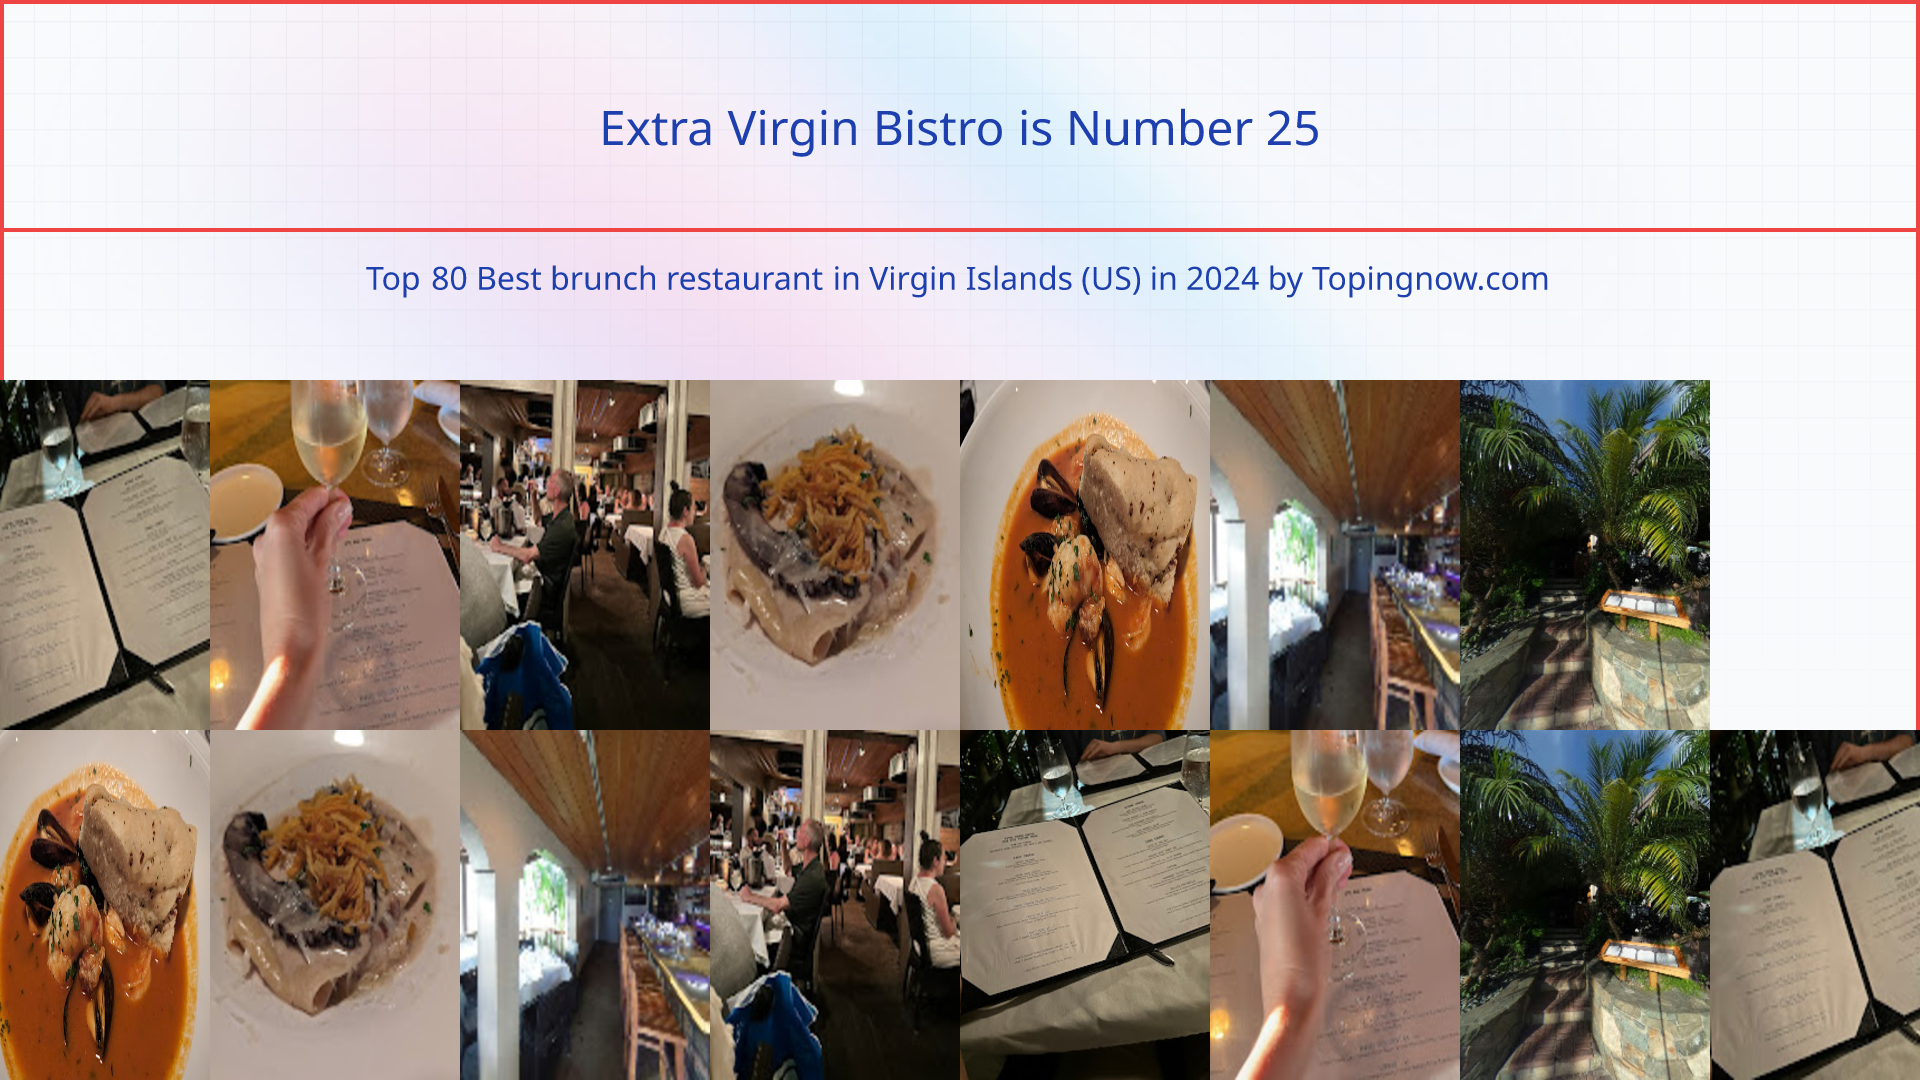 Extra Virgin Bistro: Top 80 Best brunch restaurant in Virgin Islands (US) in 2024